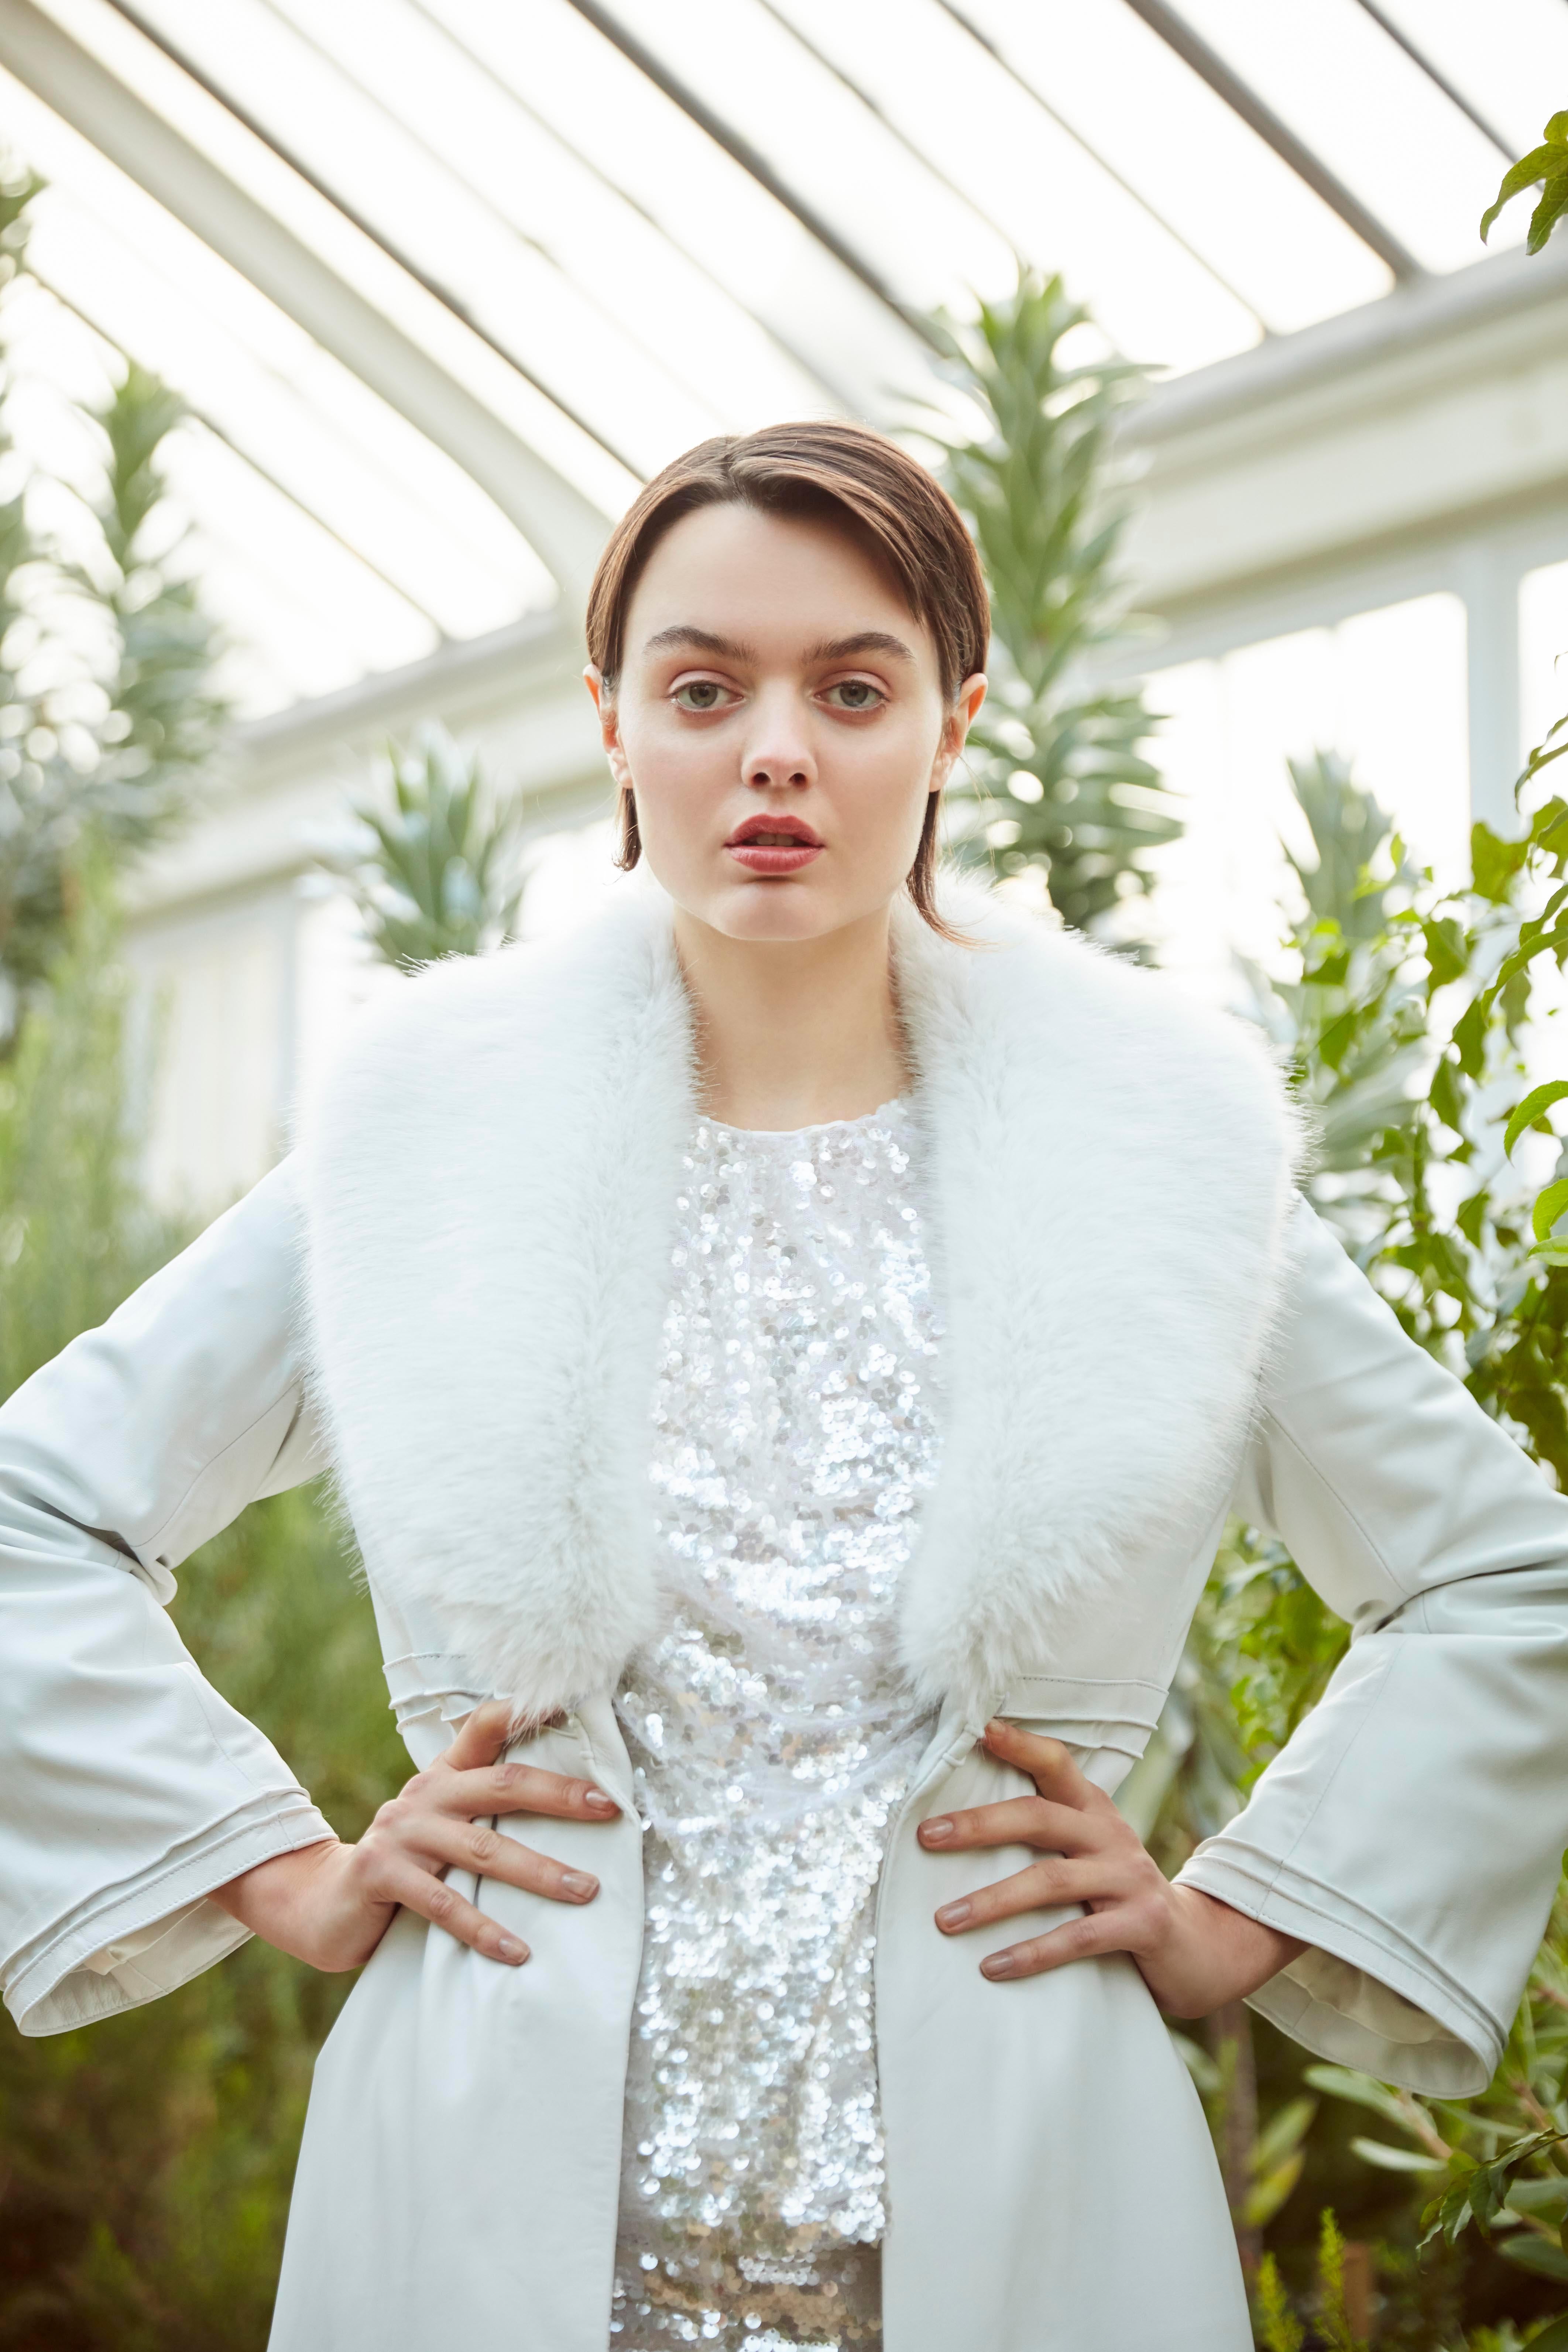 Women's Verheyen London Edward Leather Coat in White with Faux Fur - Size uk 8  For Sale